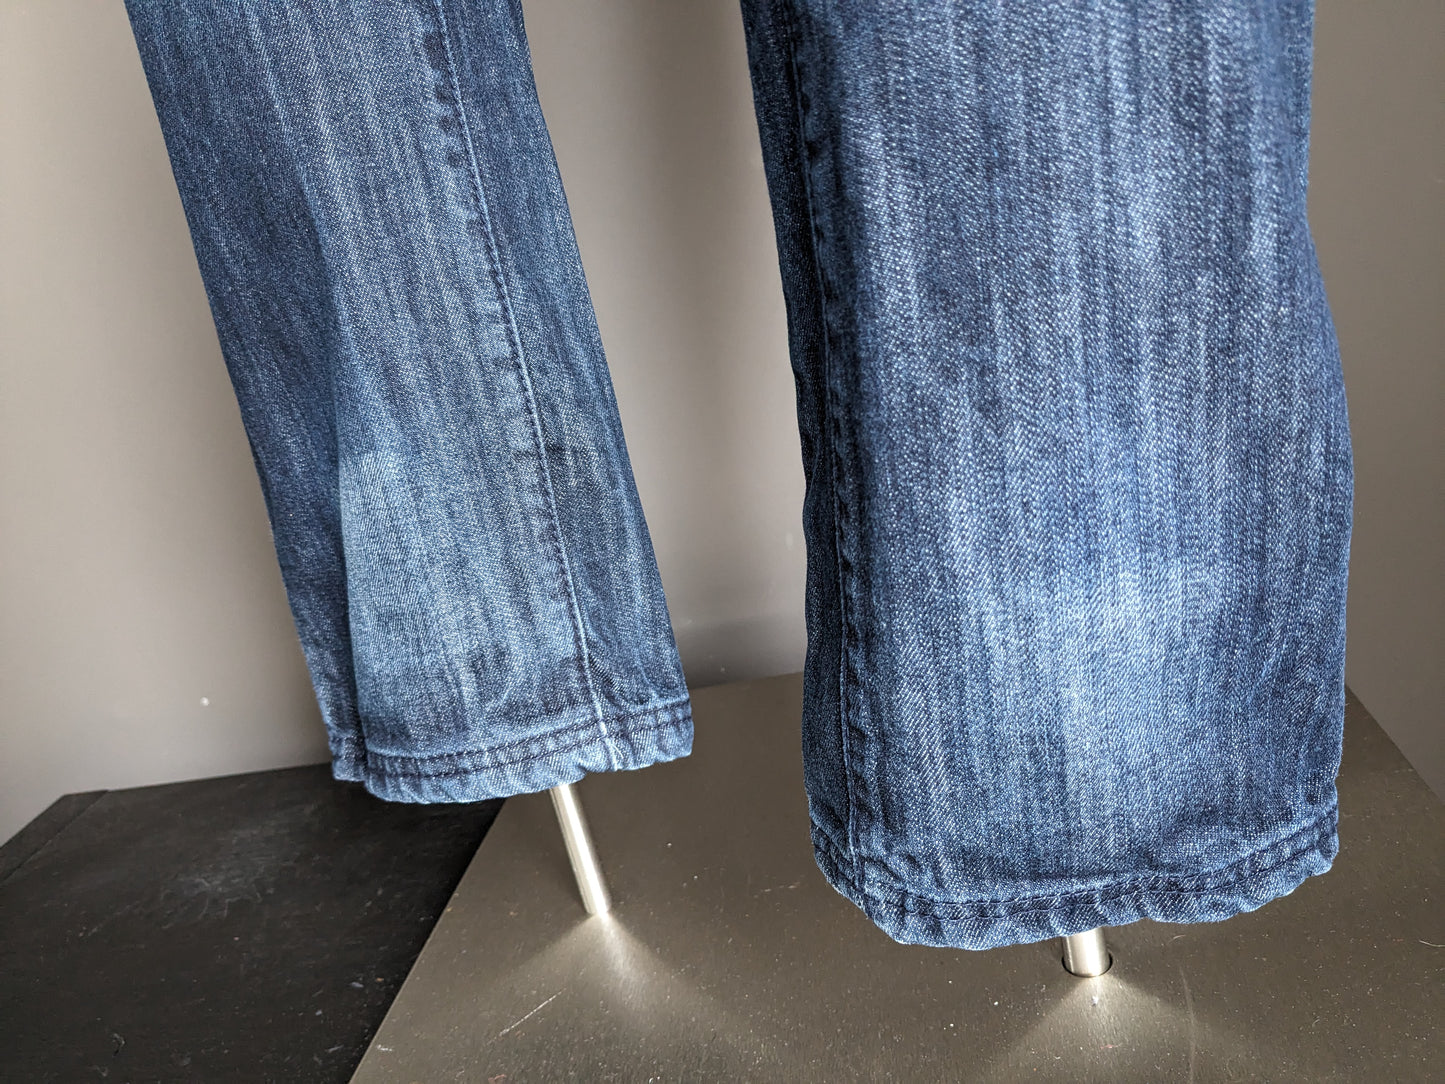 Gearbeitete Jeans. Dunkelblau gefärbt. Größe W32 - L34.